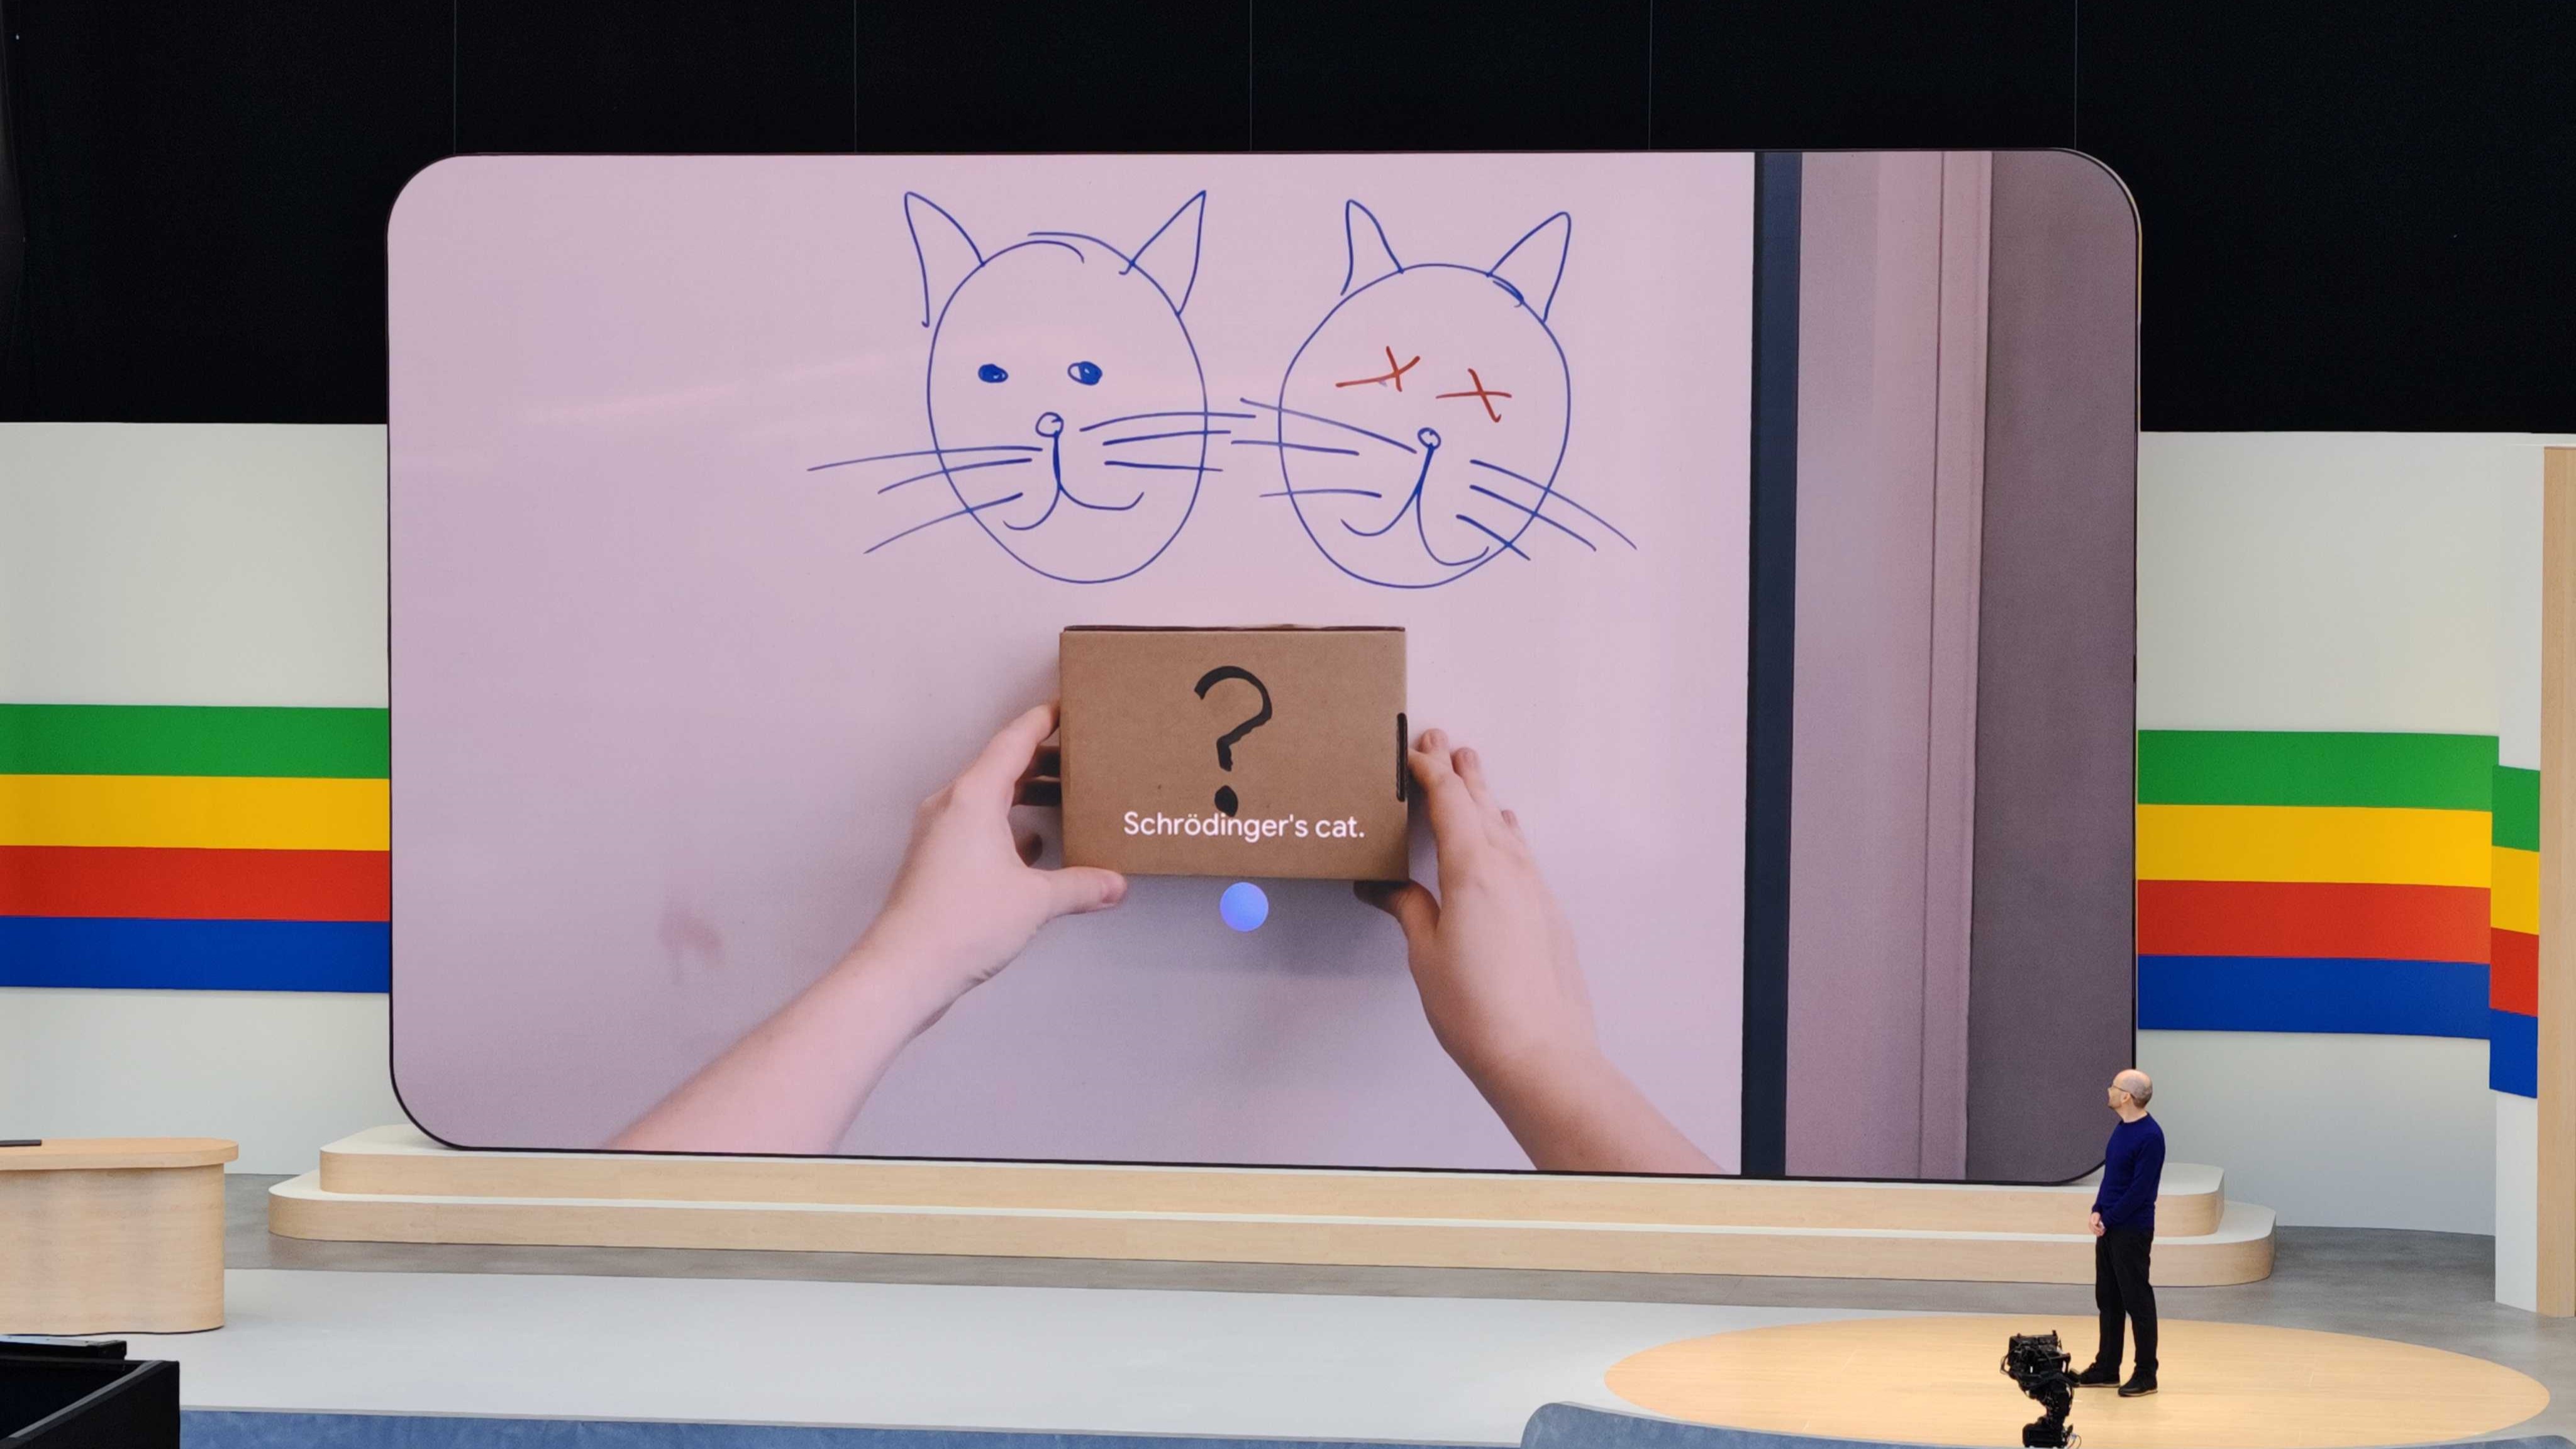 Google Gemini의 프로젝트 Astra는 다음과 같이 말합니다. "슈뢰딩거의 고양이" 그려진 고양이 두 마리와 물음표가 적힌 상자를 보면서